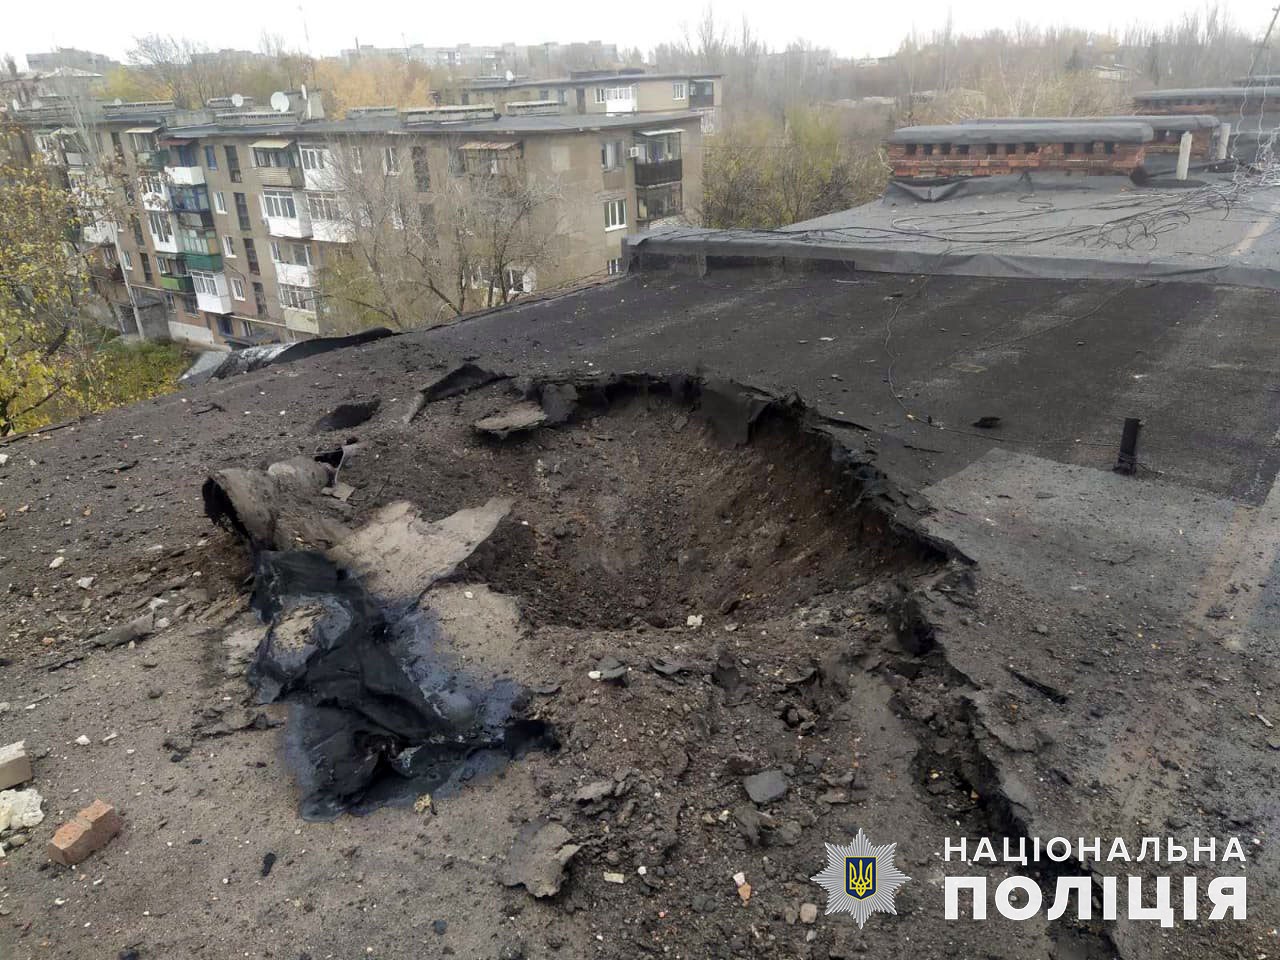 10 ноября россияне обстреляли 9 населенных пунктов Донецкой области, убили и ранили 7 жителей 6